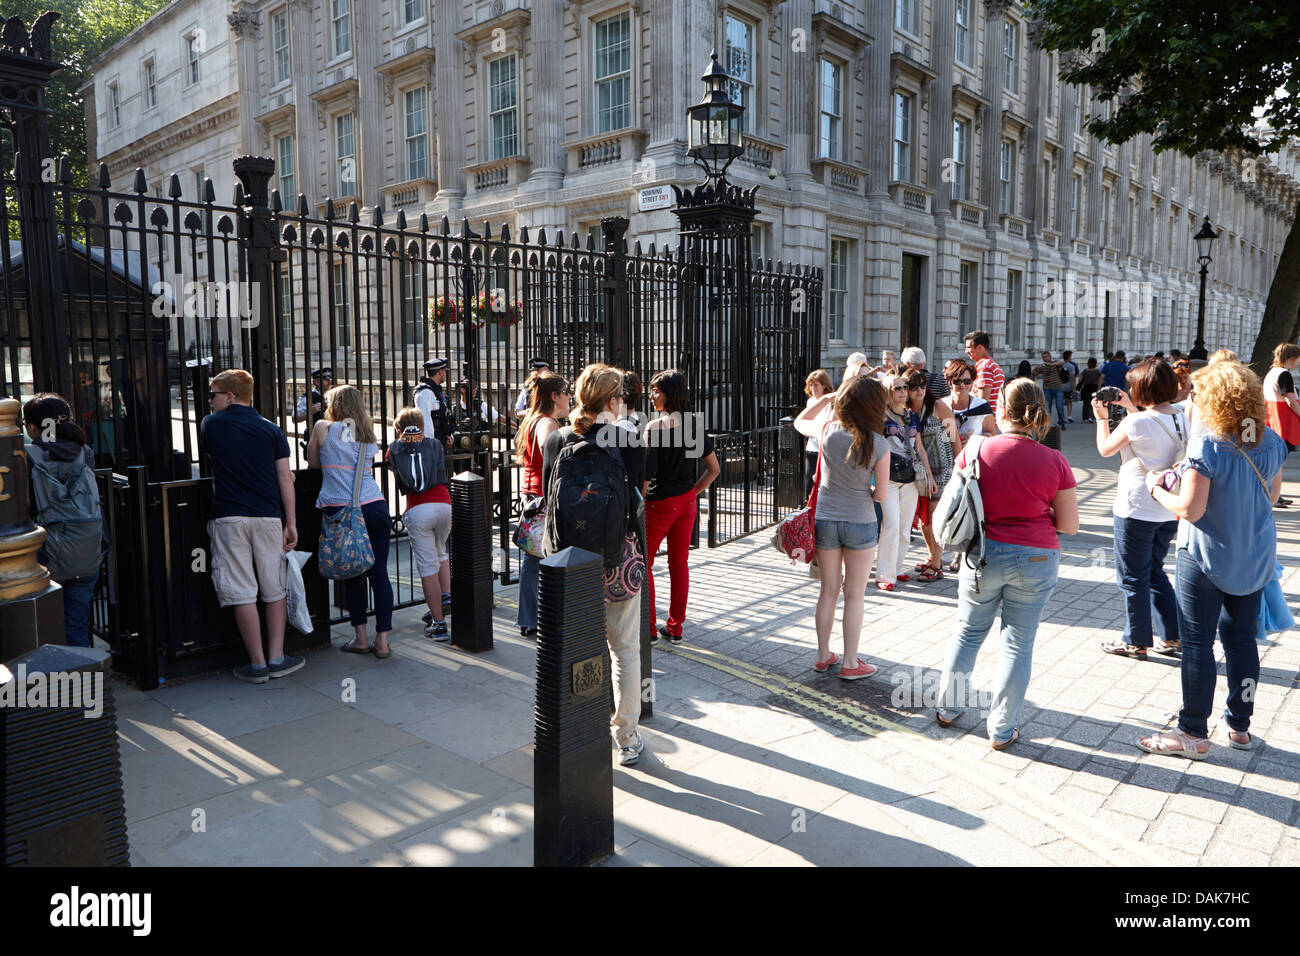 Les touristes en dehors des barrières de sécurité de Downing Street London, England uk Banque D'Images